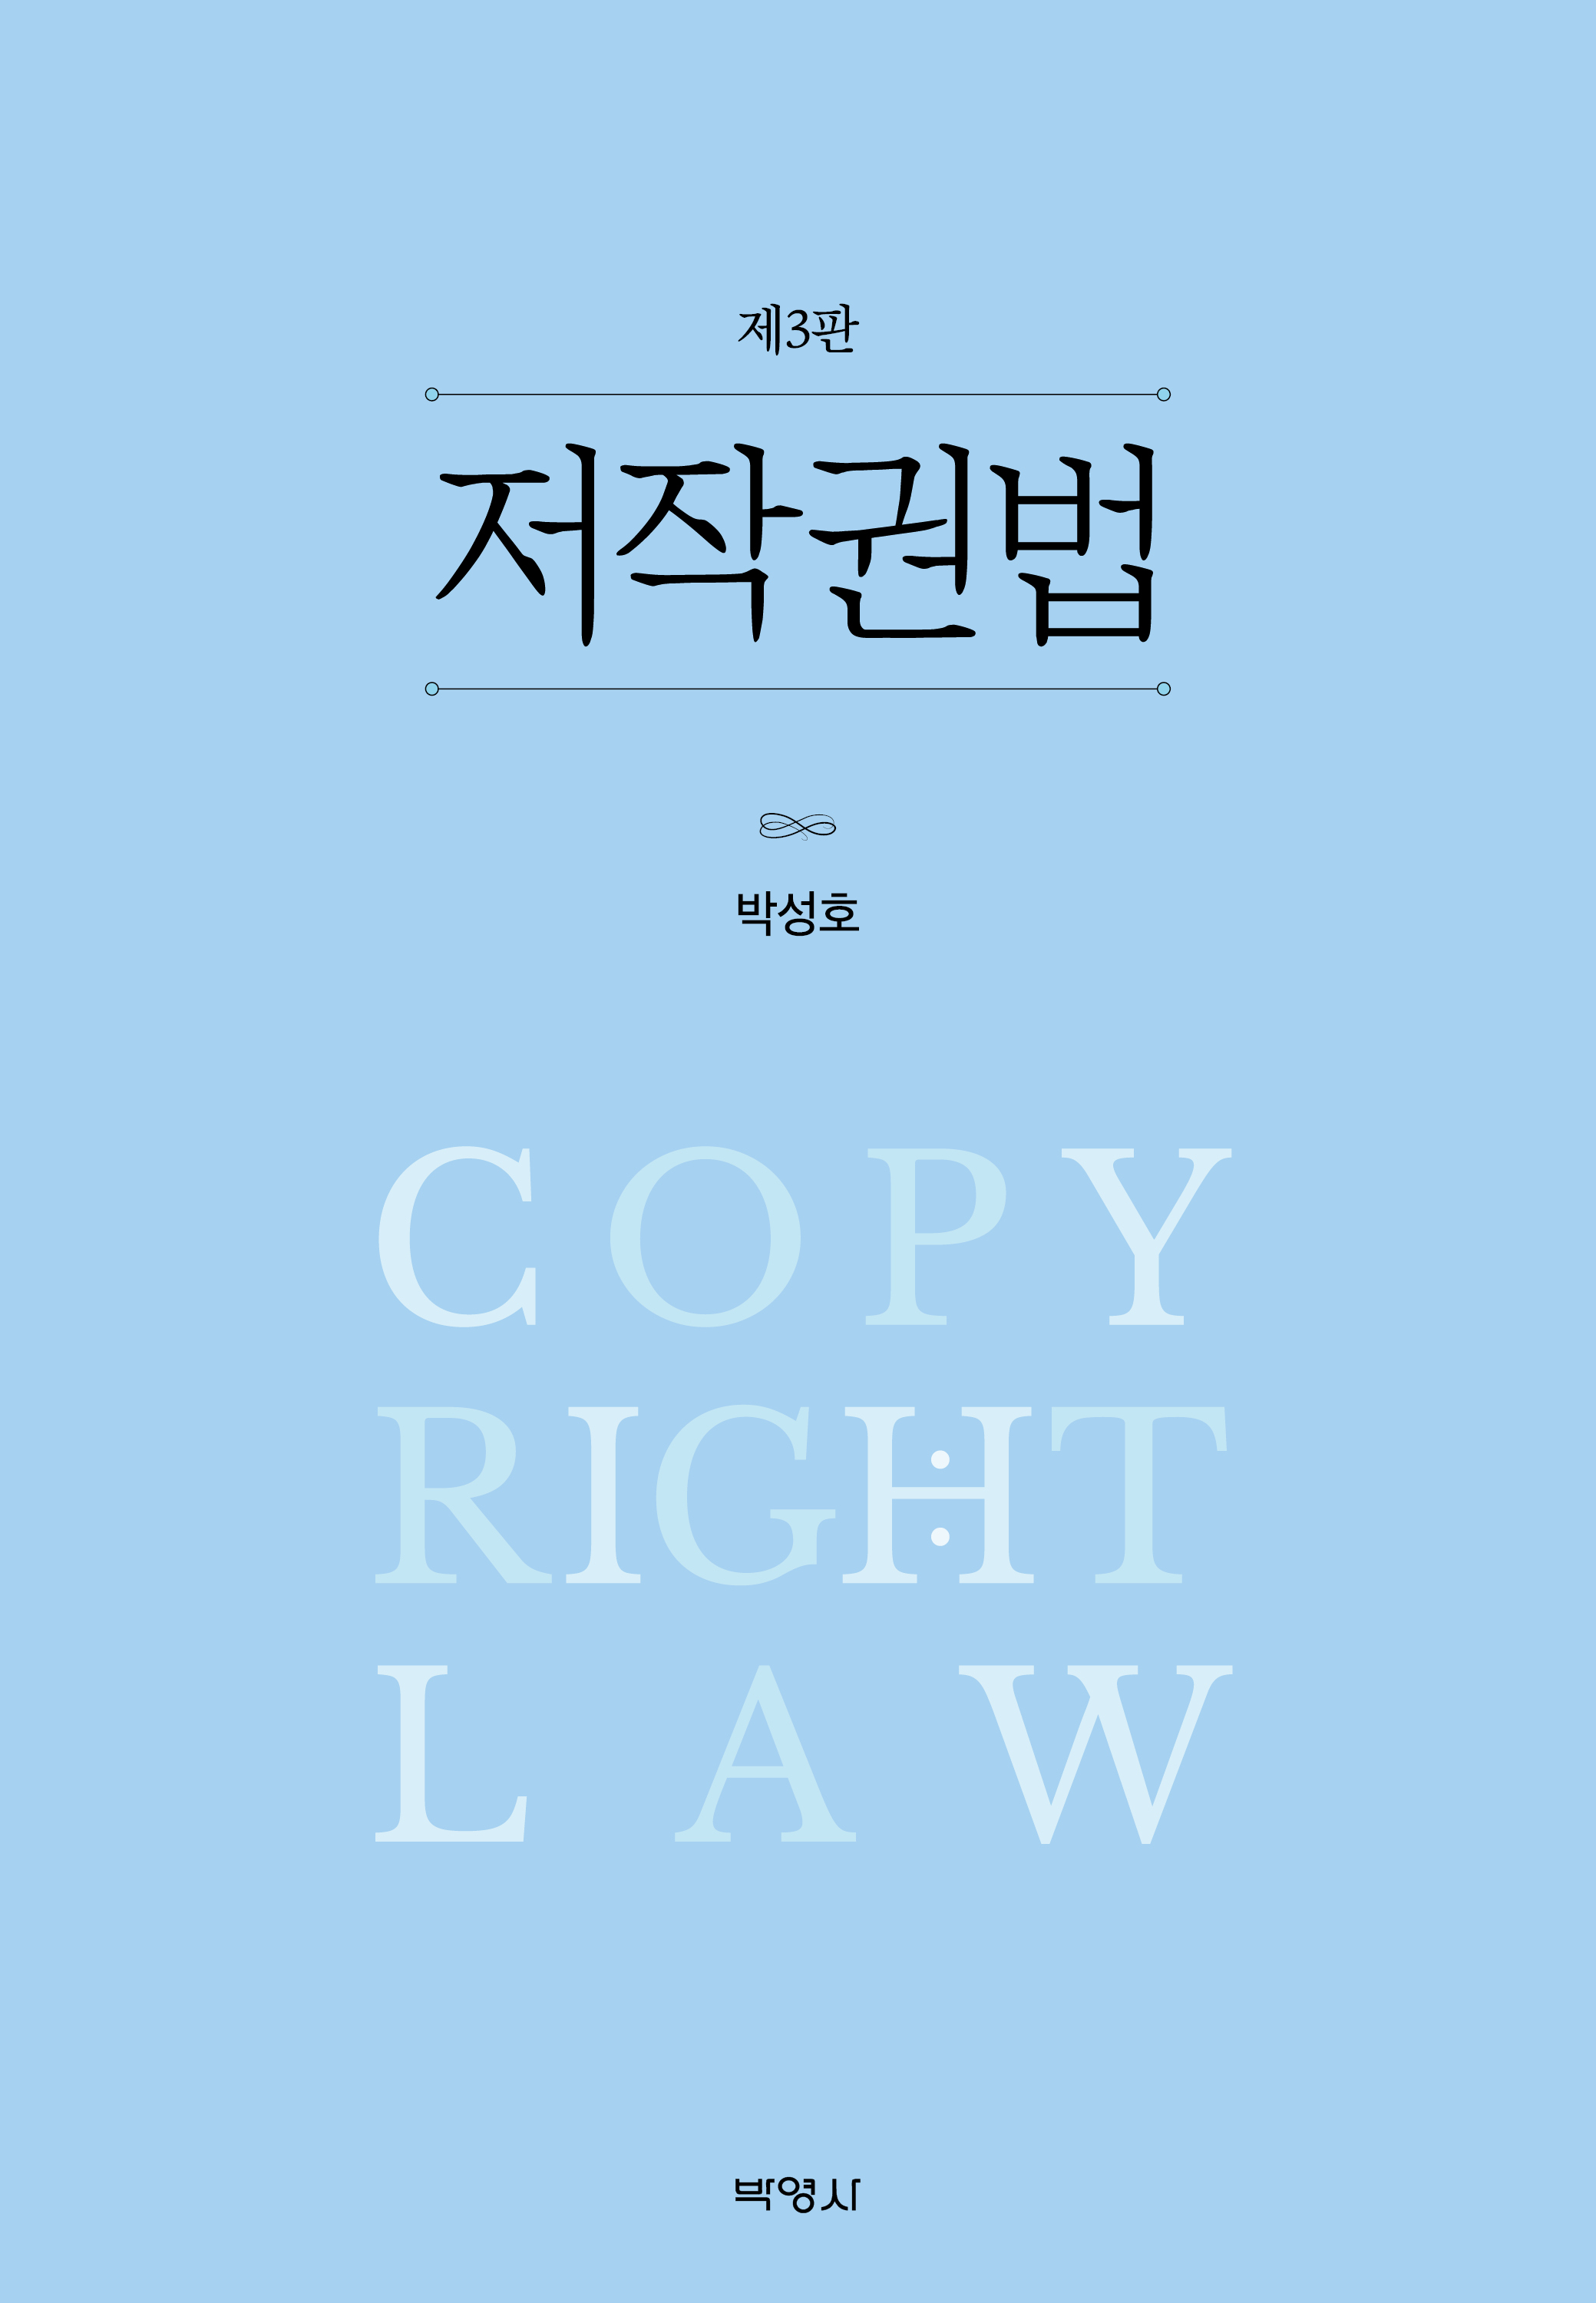 저작권법(제3판)